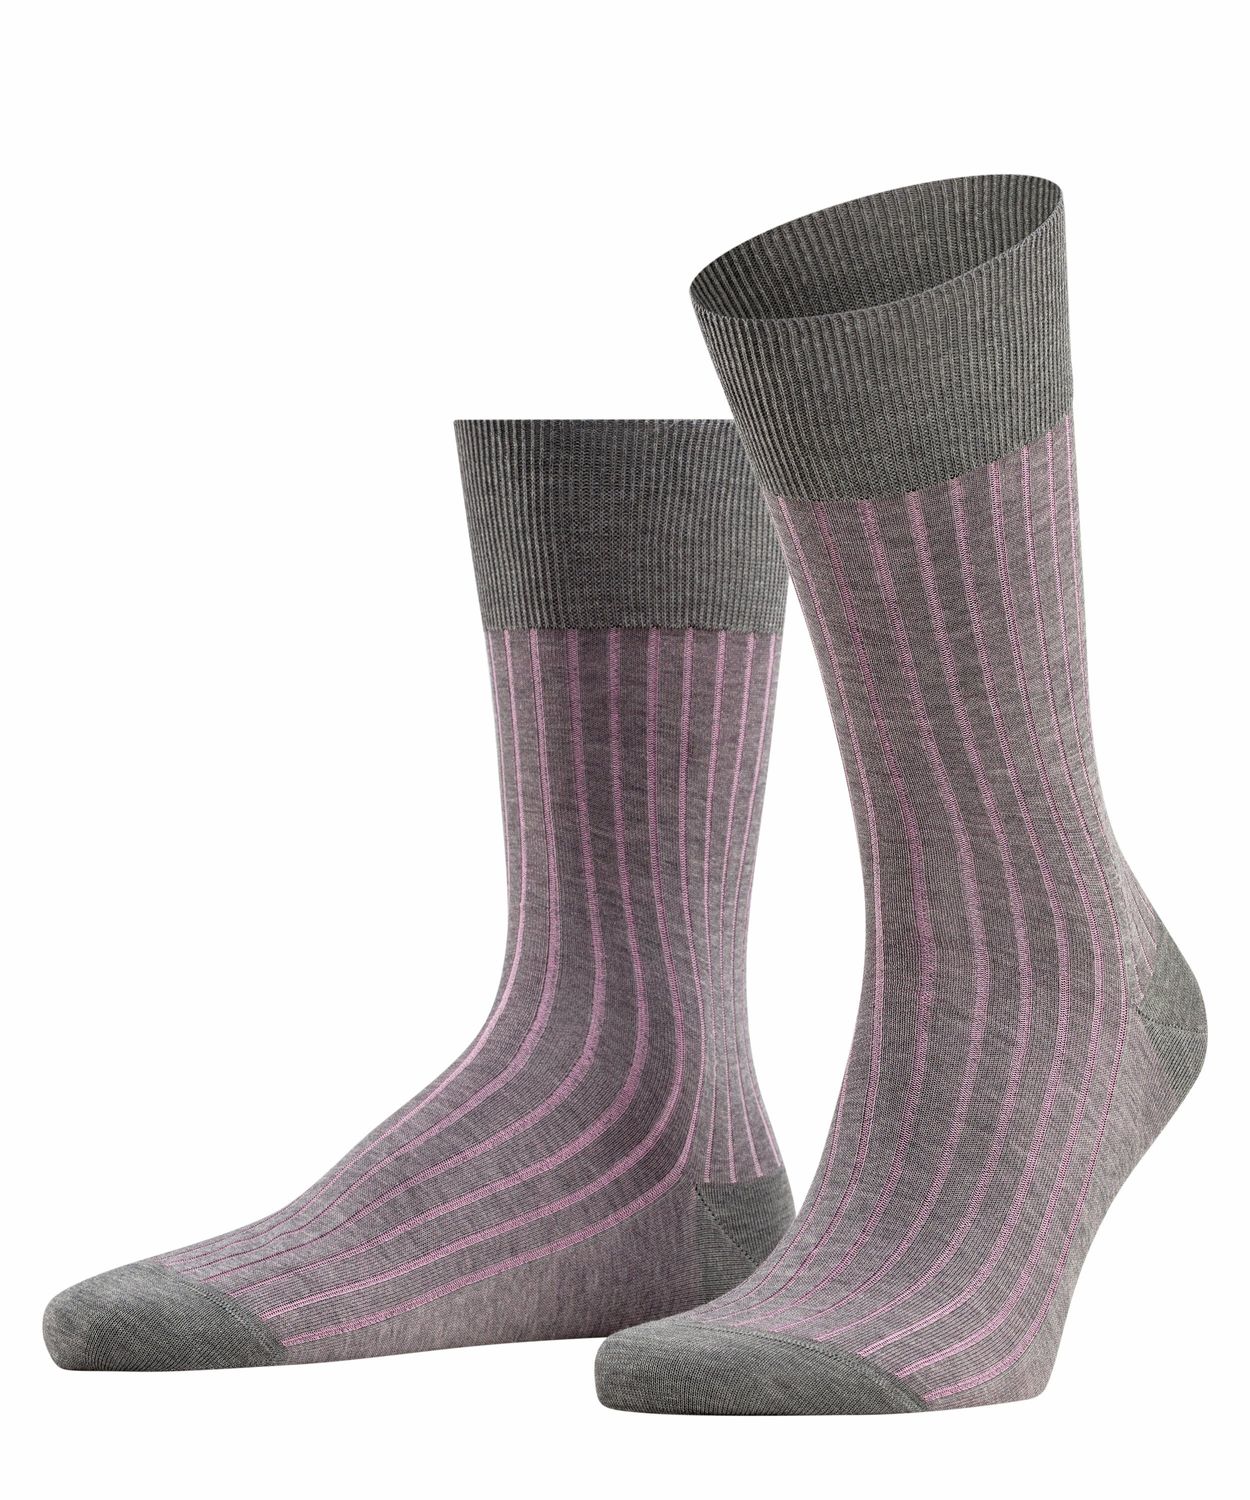 Falke Herren Socken Shadow Hersteller: Falke Bestellnummer:4043874244152